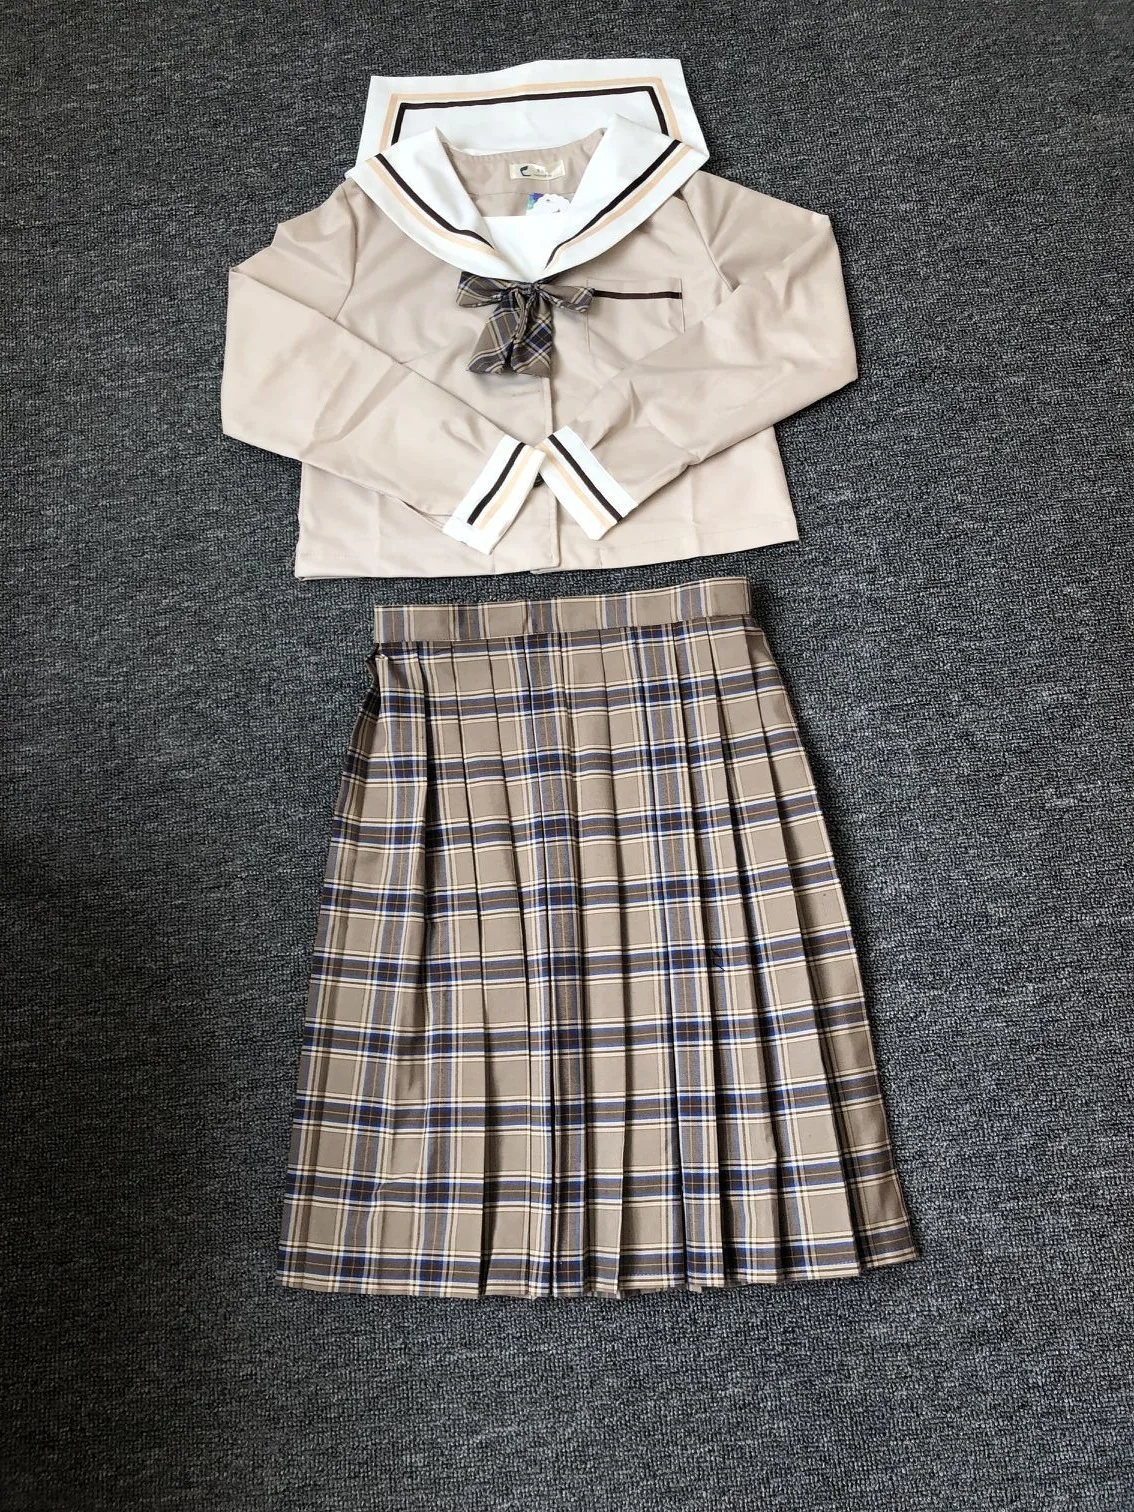 School Dresses Japanese College Middle School Uniform For Girls Jk Uniforms Lady Sailor Suit Tea Brown Color Plaid Pleated Skirt